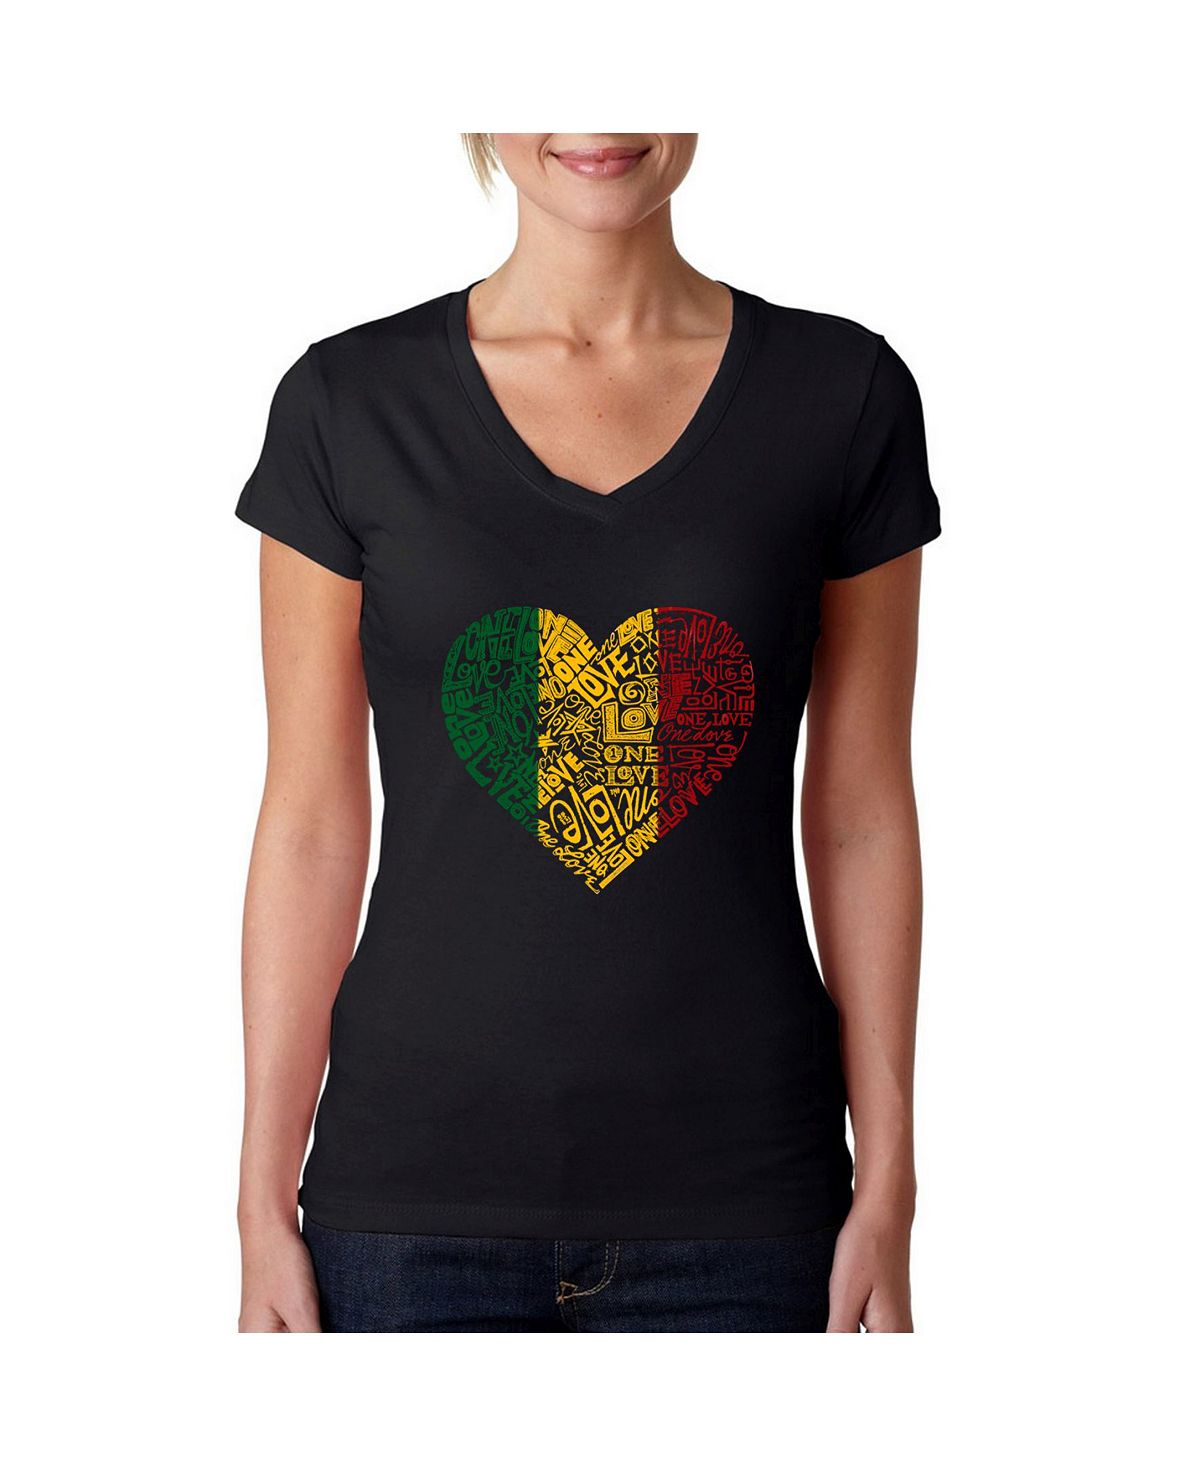 Женская футболка word art с v-образным вырезом - one love heart LA Pop Art, черный часы сердце из слов бабушке